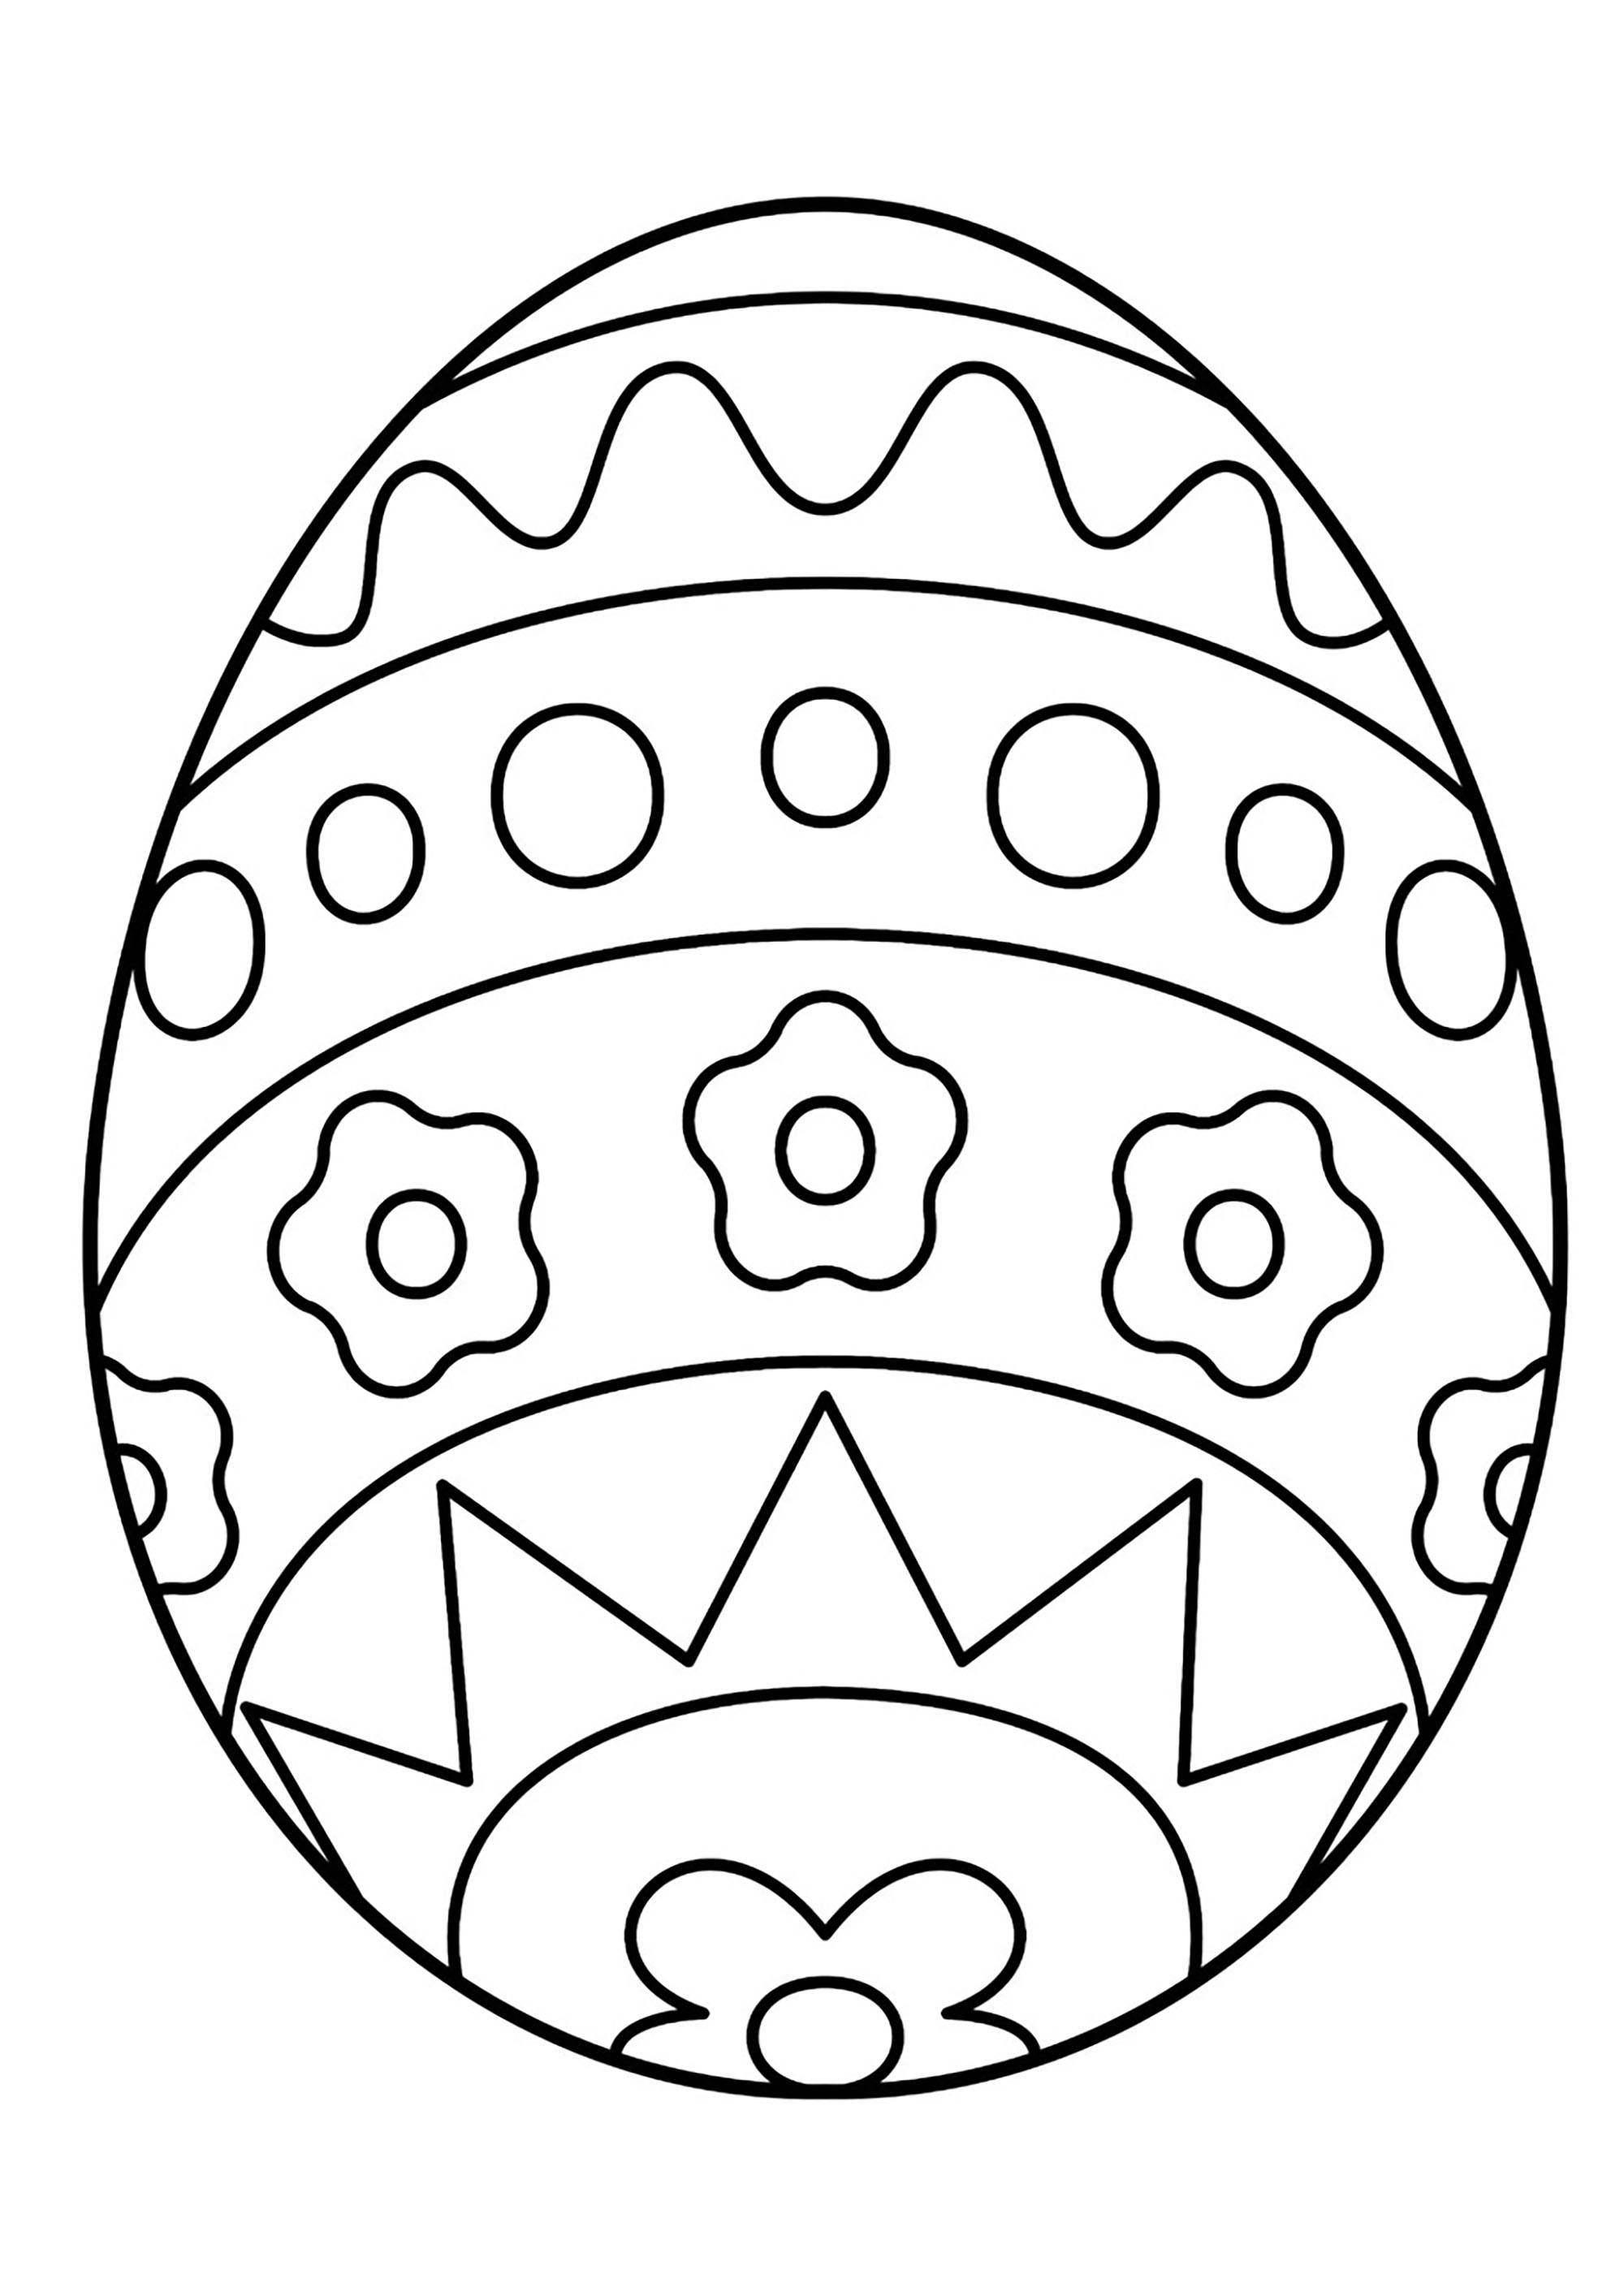 Oeuf de Pâques avec motifs simples